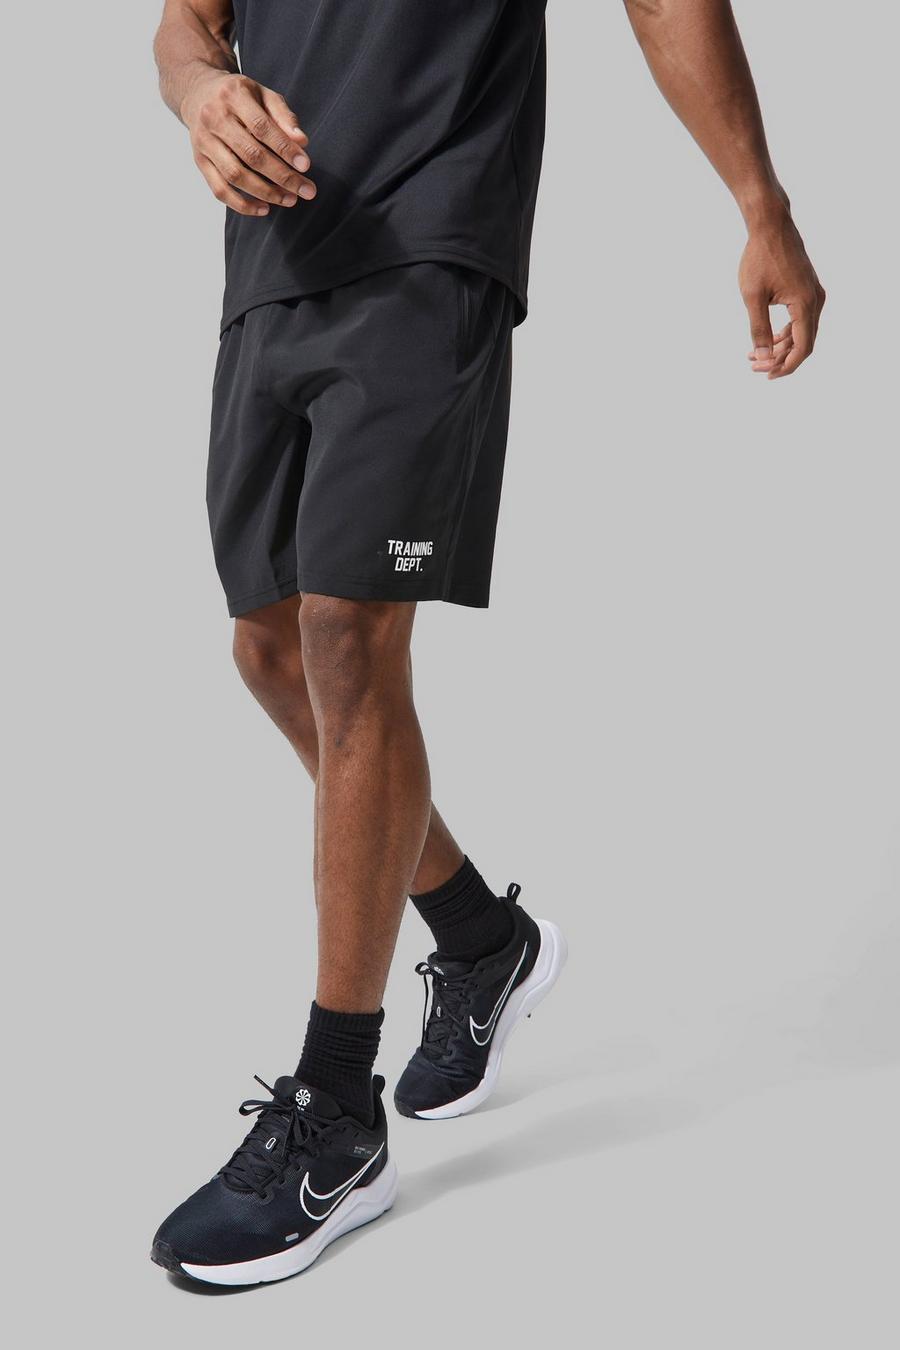 Pantaloncini da allenamento Man Active per alta performance, Black